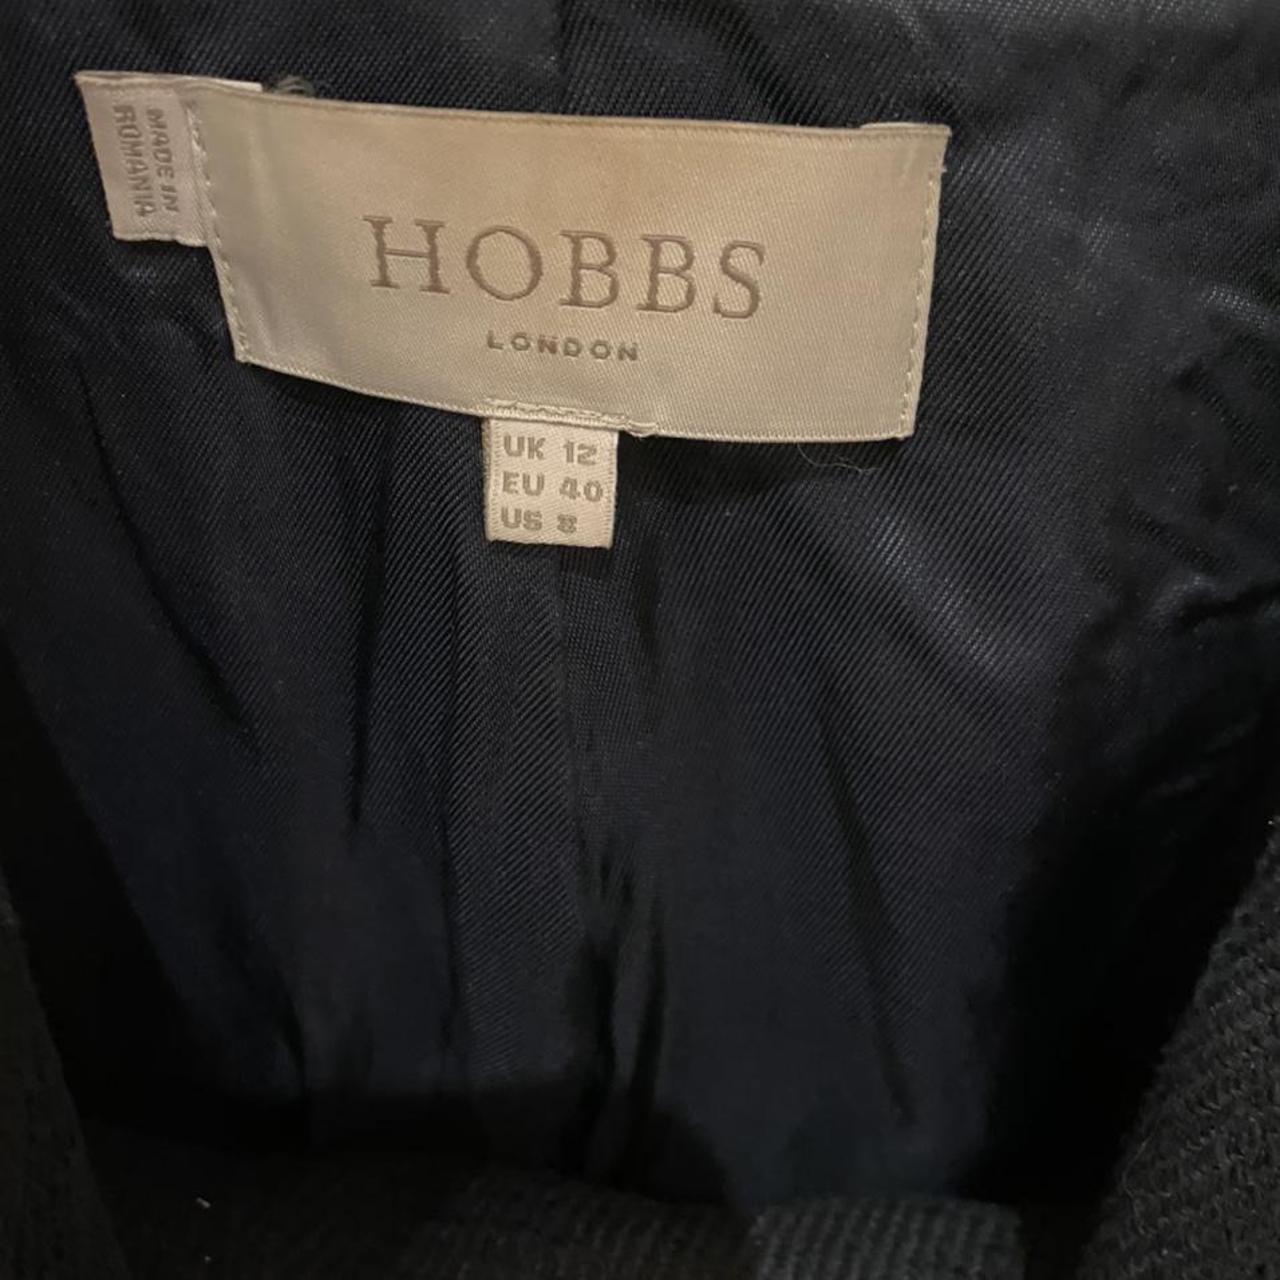 Hobbs suit - dress and blazer - Depop